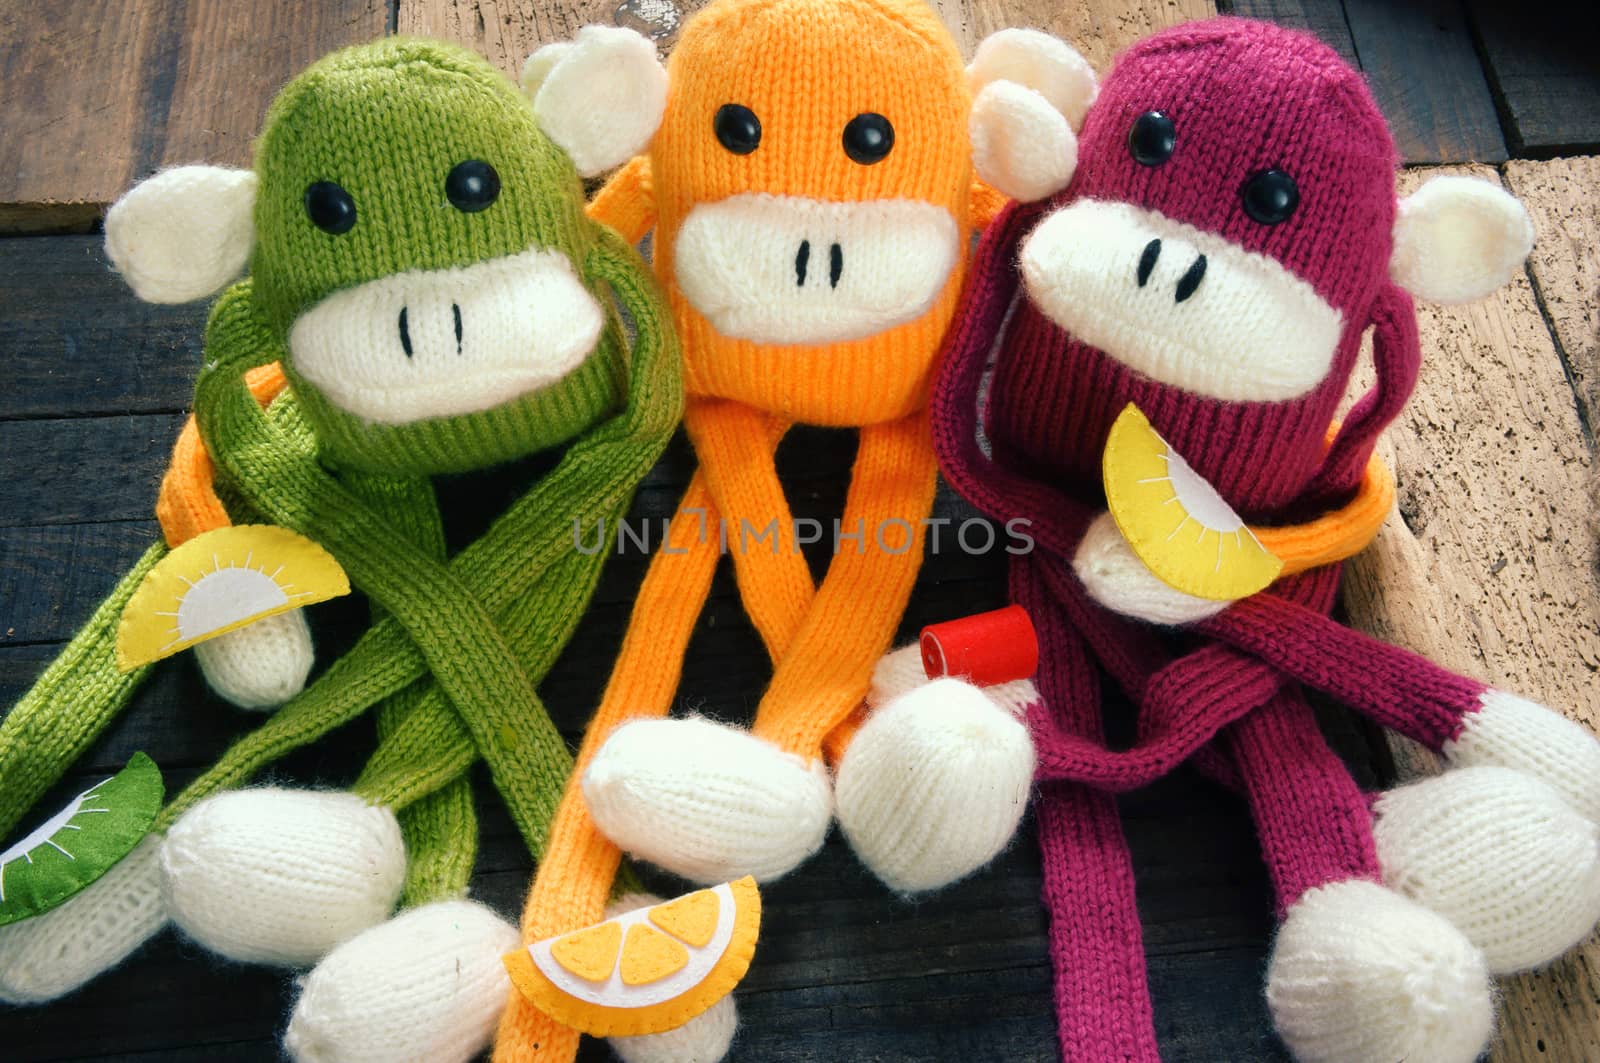 handmade, monkey, happy new year 2016, funny animal by xuanhuongho